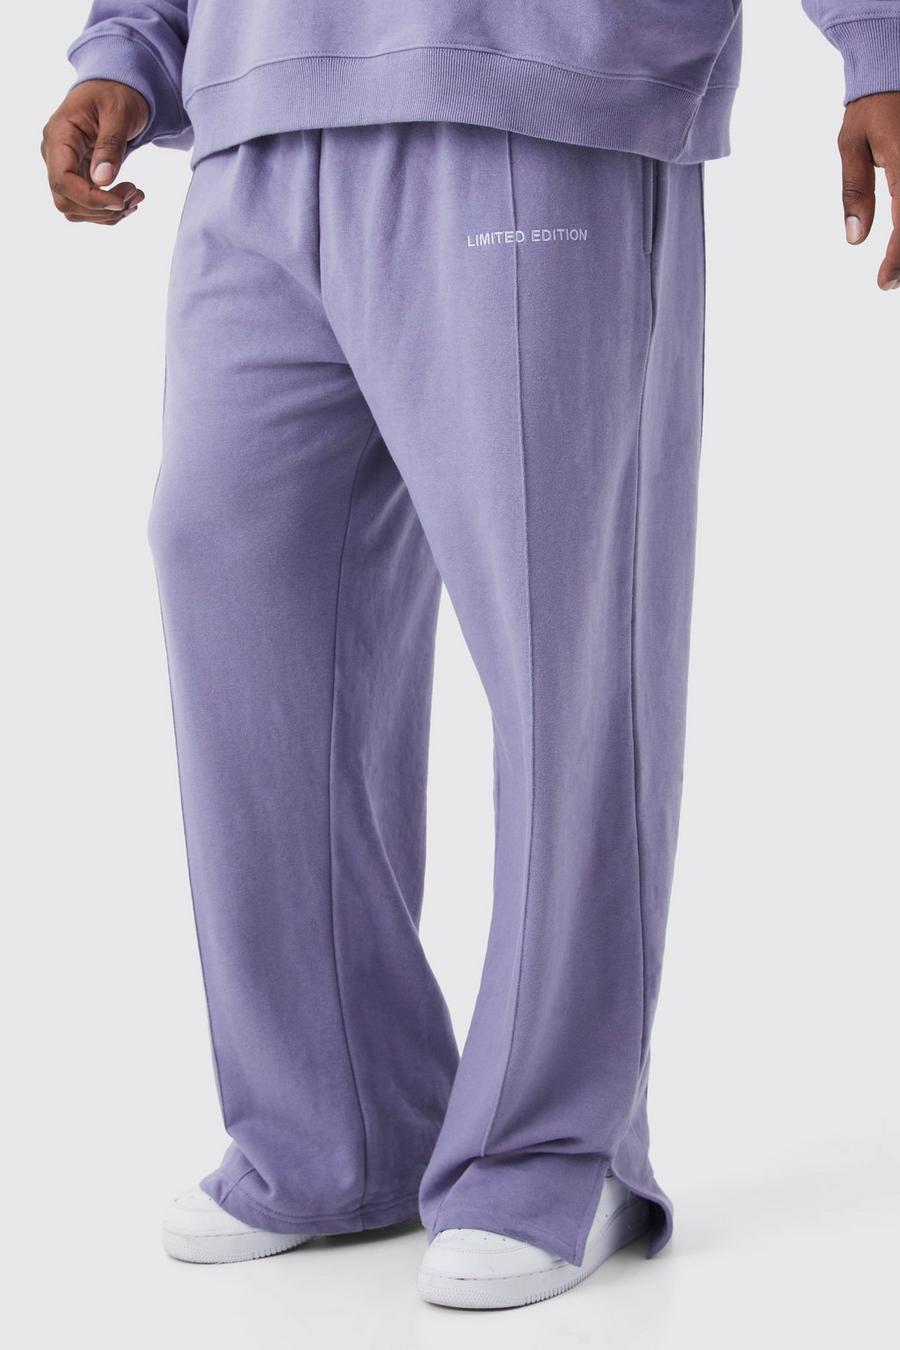 Pantalón deportivo Plus holgado grueso con abertura en el bajo, Lavender